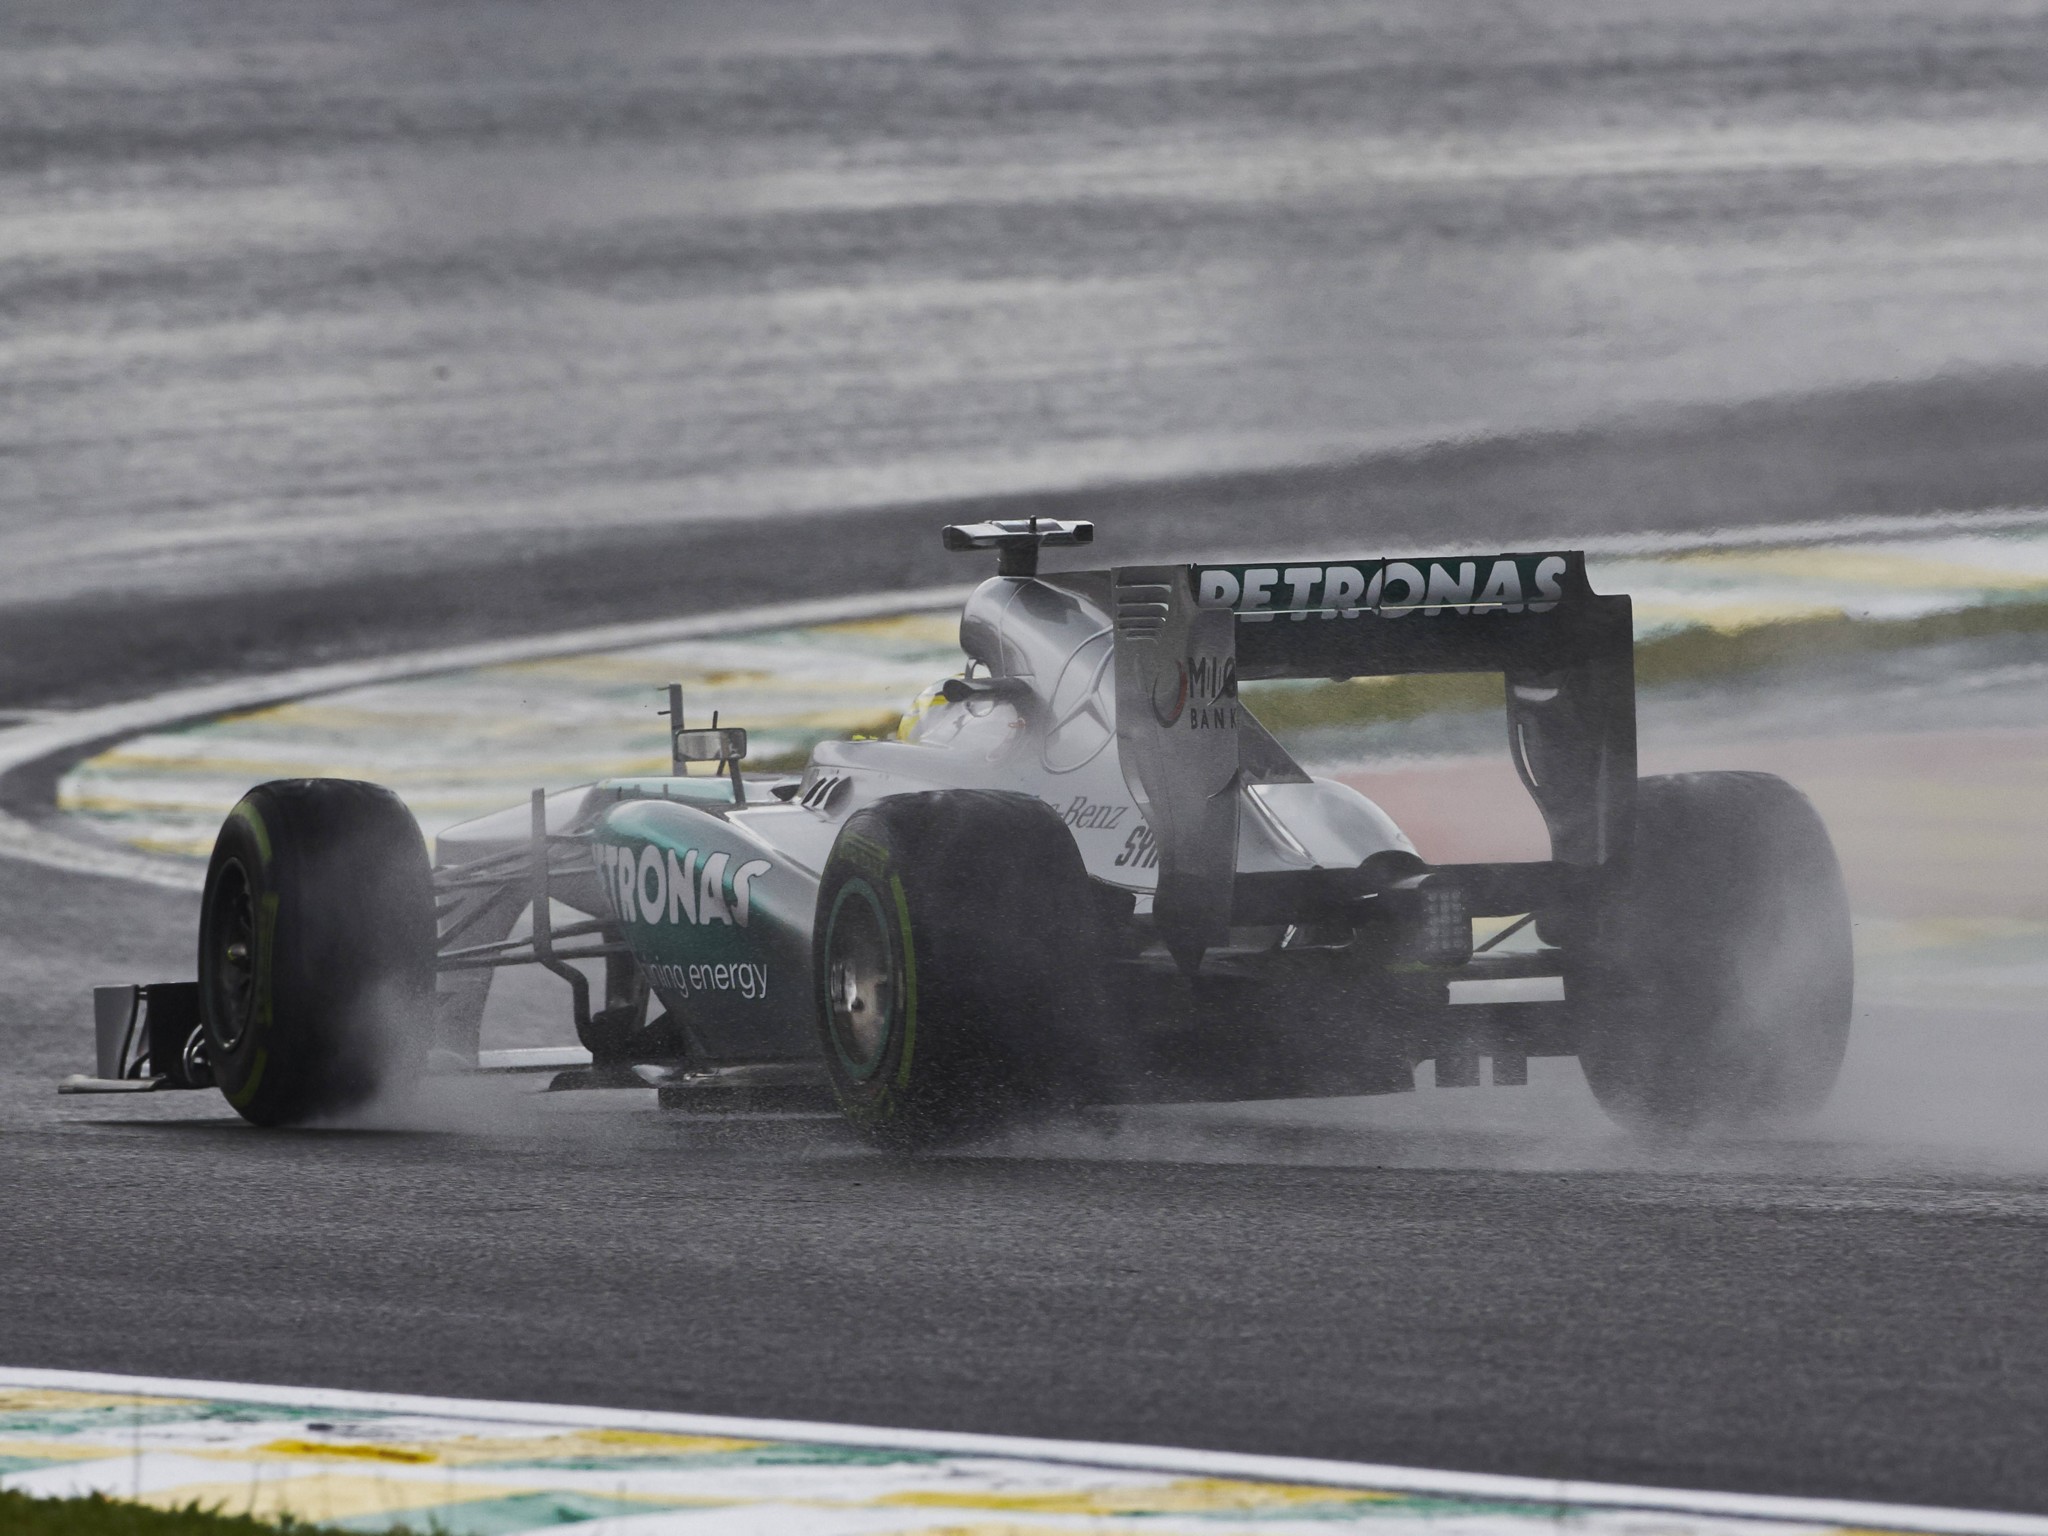 2013, Mercedes, Benz, G p, Mgp, W04, Formula, F 1, Race, Racing Wallpaper